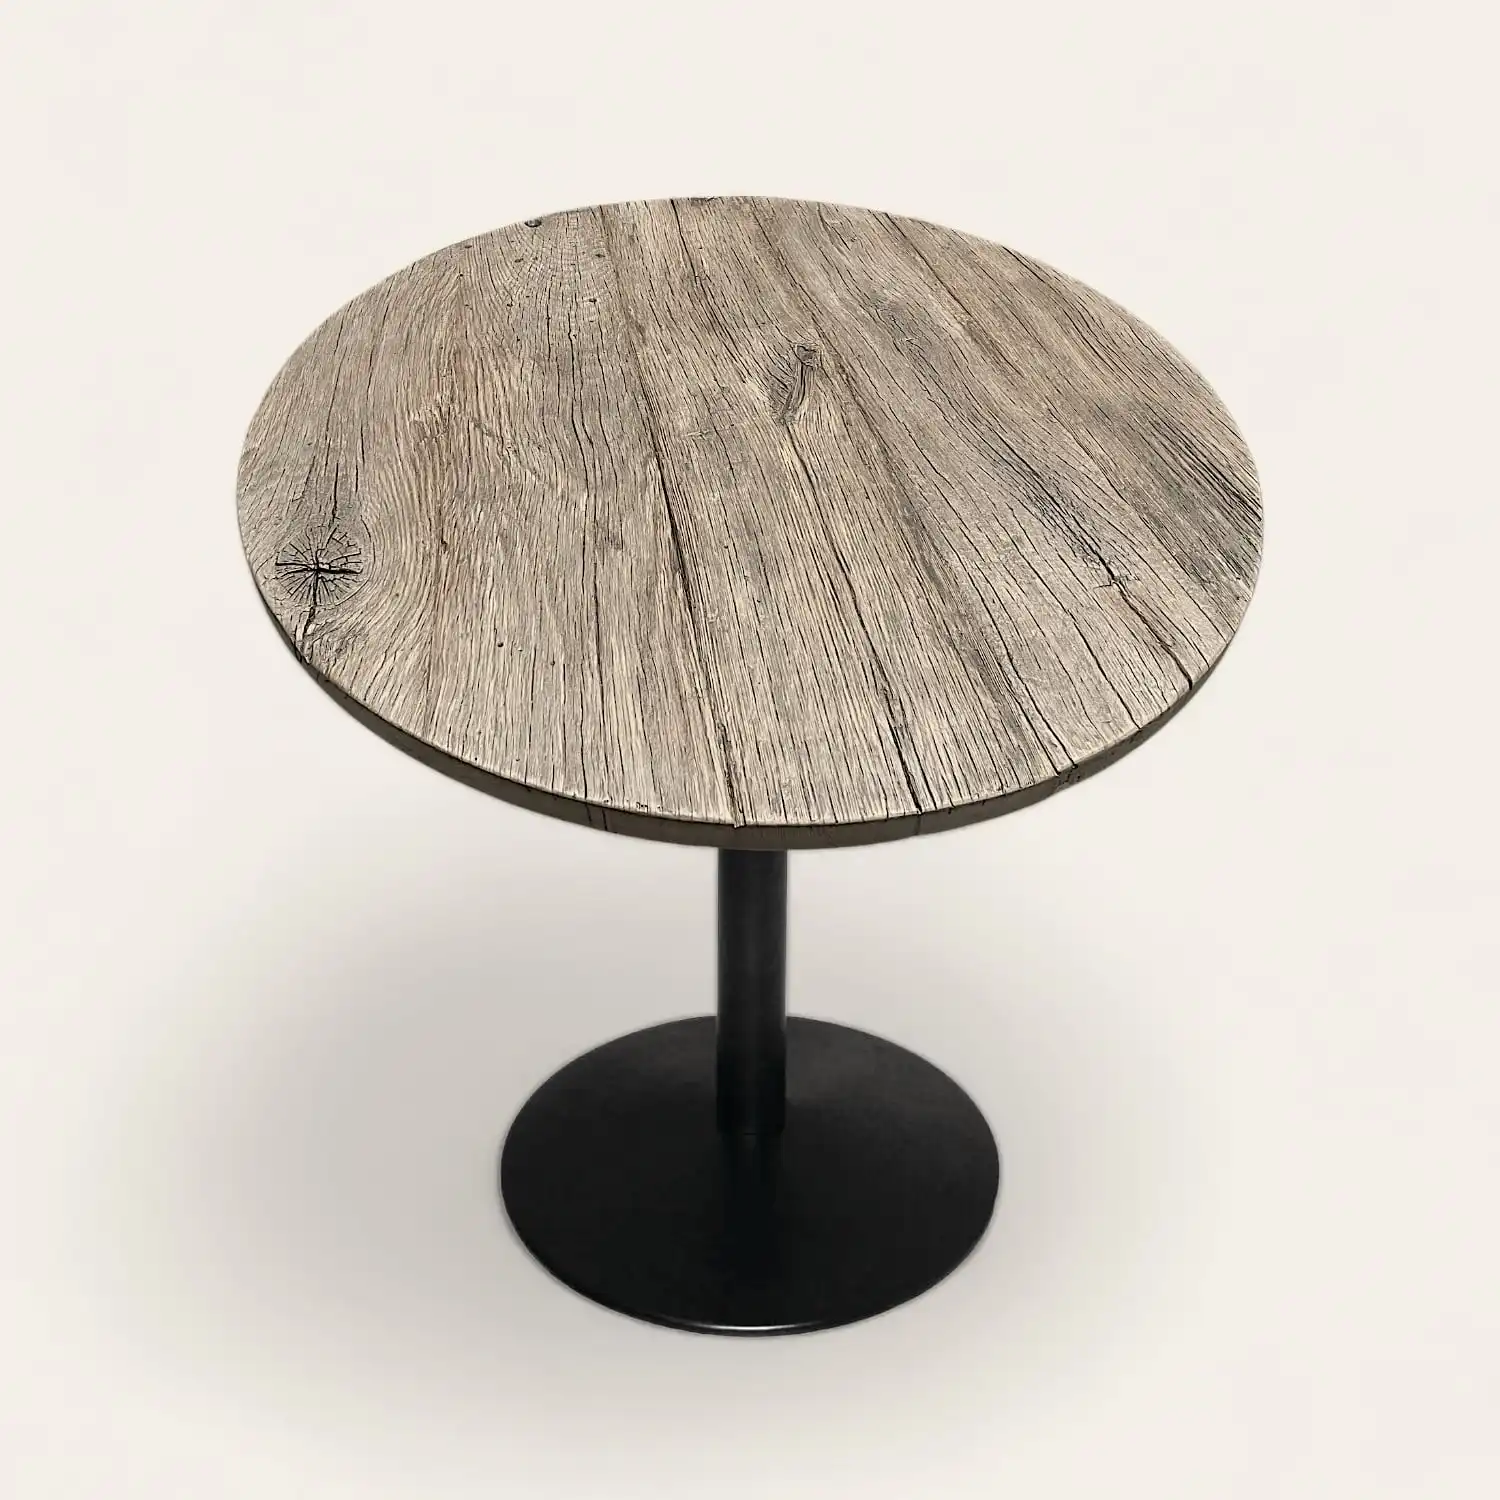  Une table ronde en bois rustique avec un piètement noir. 